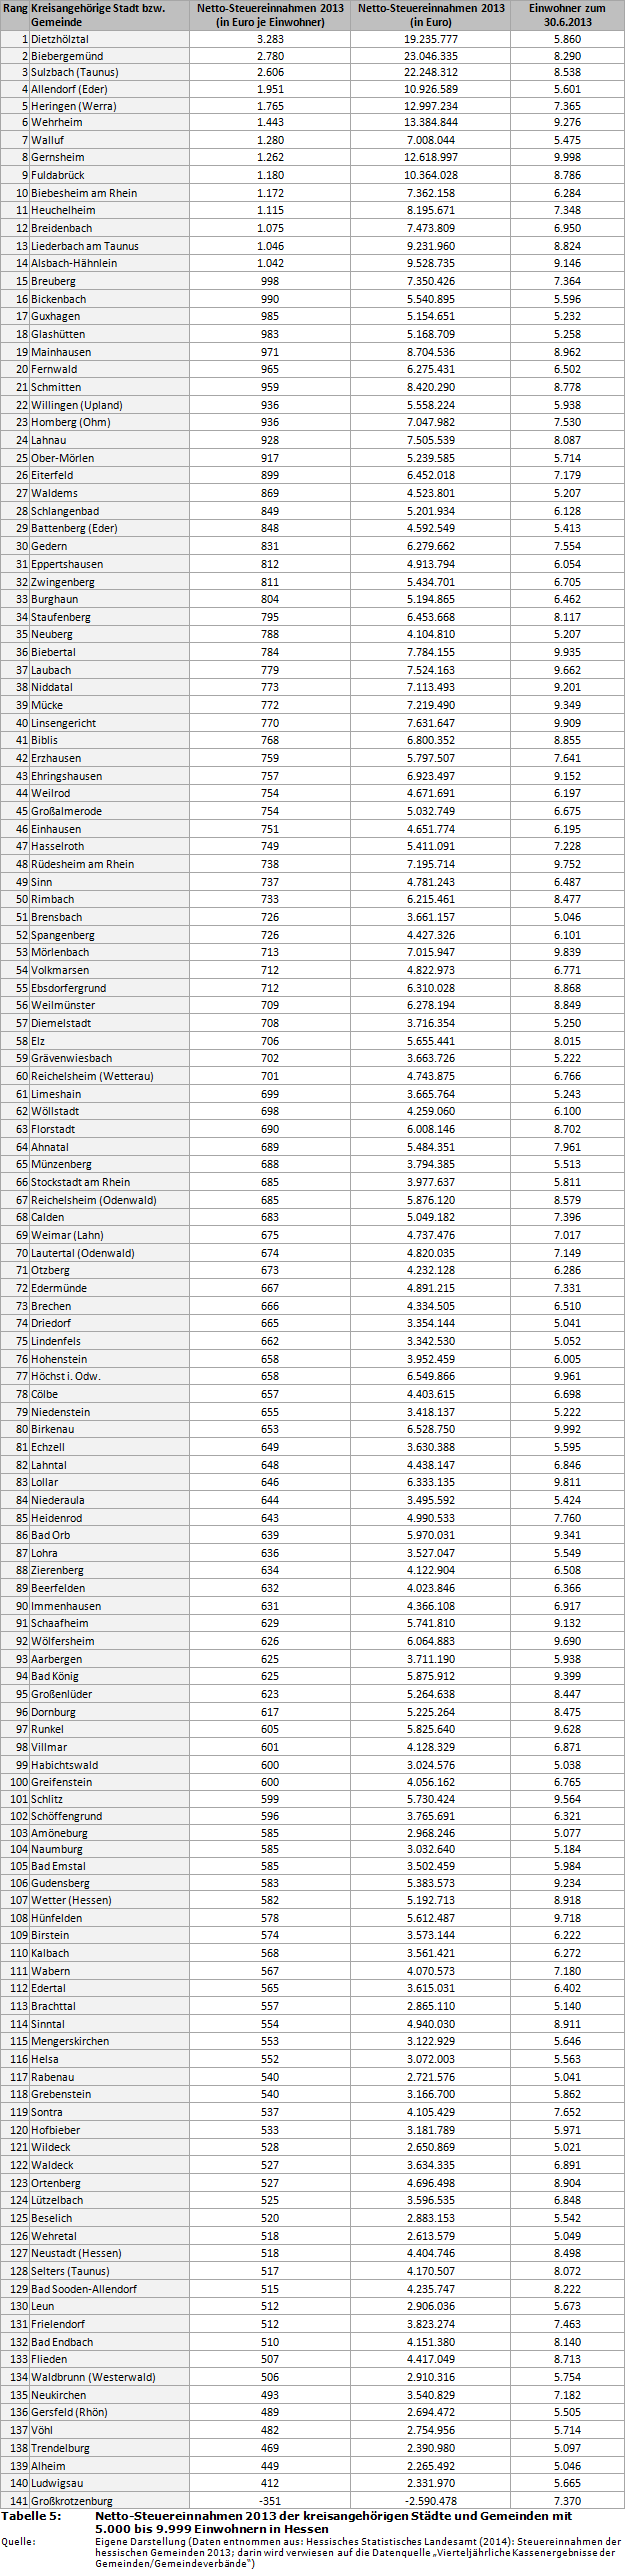 Netto-Steuereinnahmen 2013 der kreisangehörigen Städte und Gemeinden mit 5.000 bis 9.999 Einwohnern in Hessen